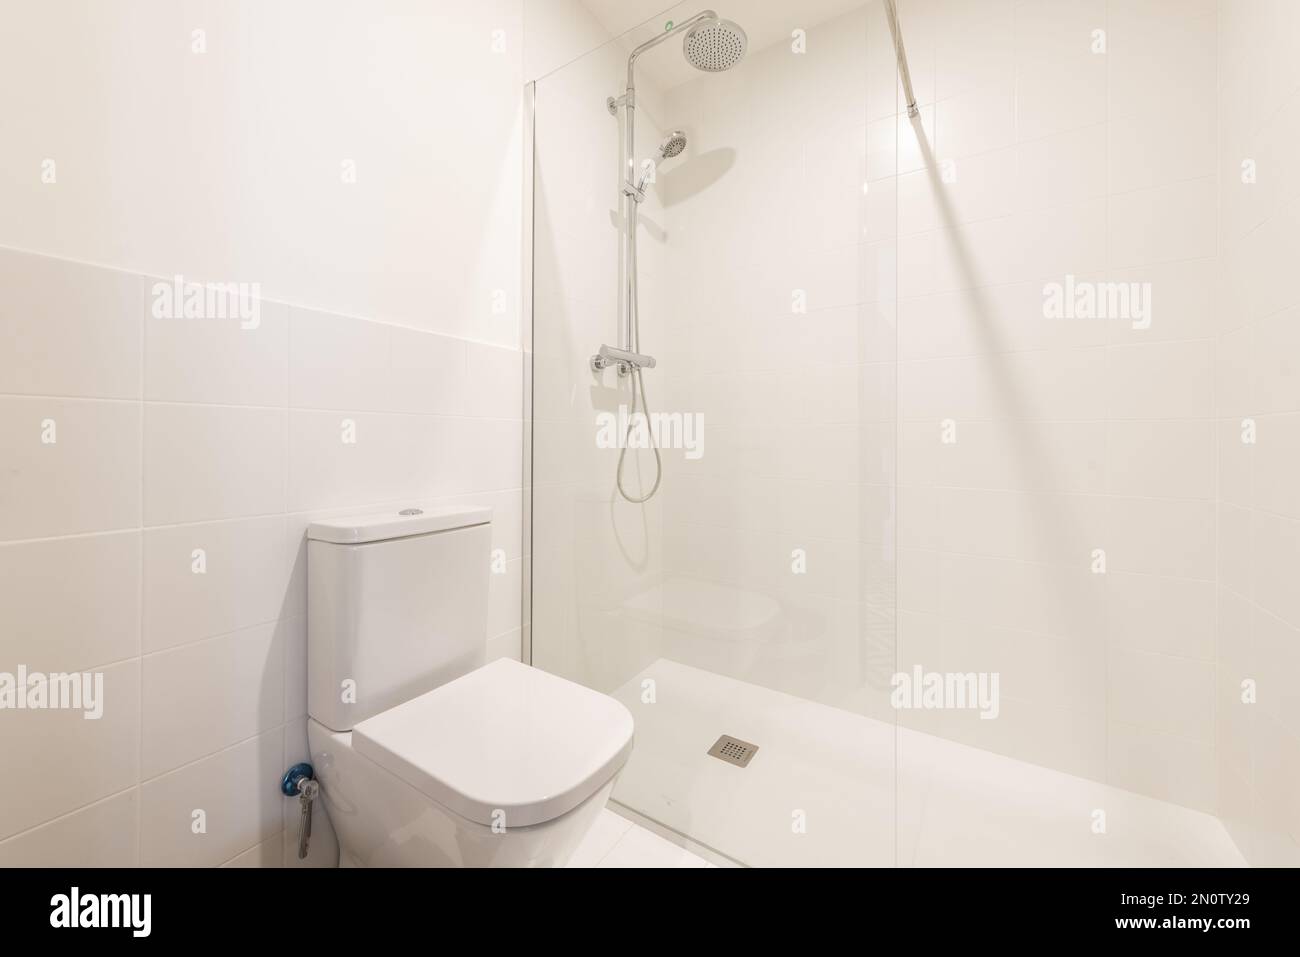 Une salle de bains simple avec toilettes en porcelaine et une cabine de douche à parois de verre avec robinets et pomme de douche chromés Banque D'Images